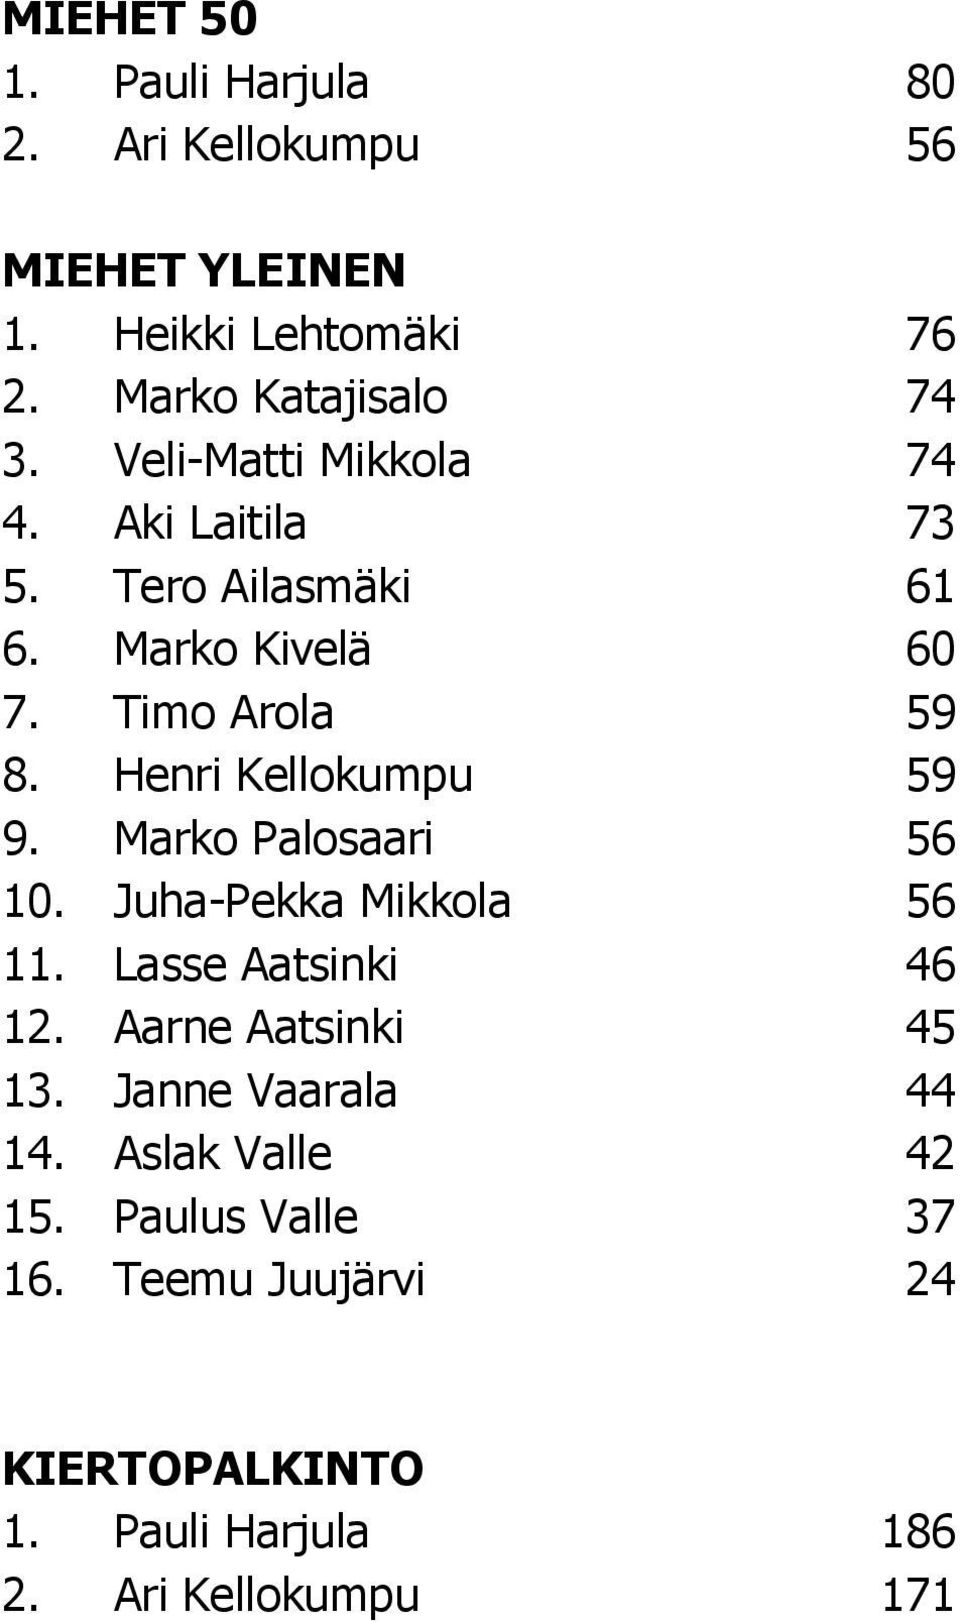 Henri Kellokumpu 59 9. Marko Palosaari 56 10. Juha-Pekka Mikkola 56 11. Lasse Aatsinki 46 12. Aarne Aatsinki 45 13.